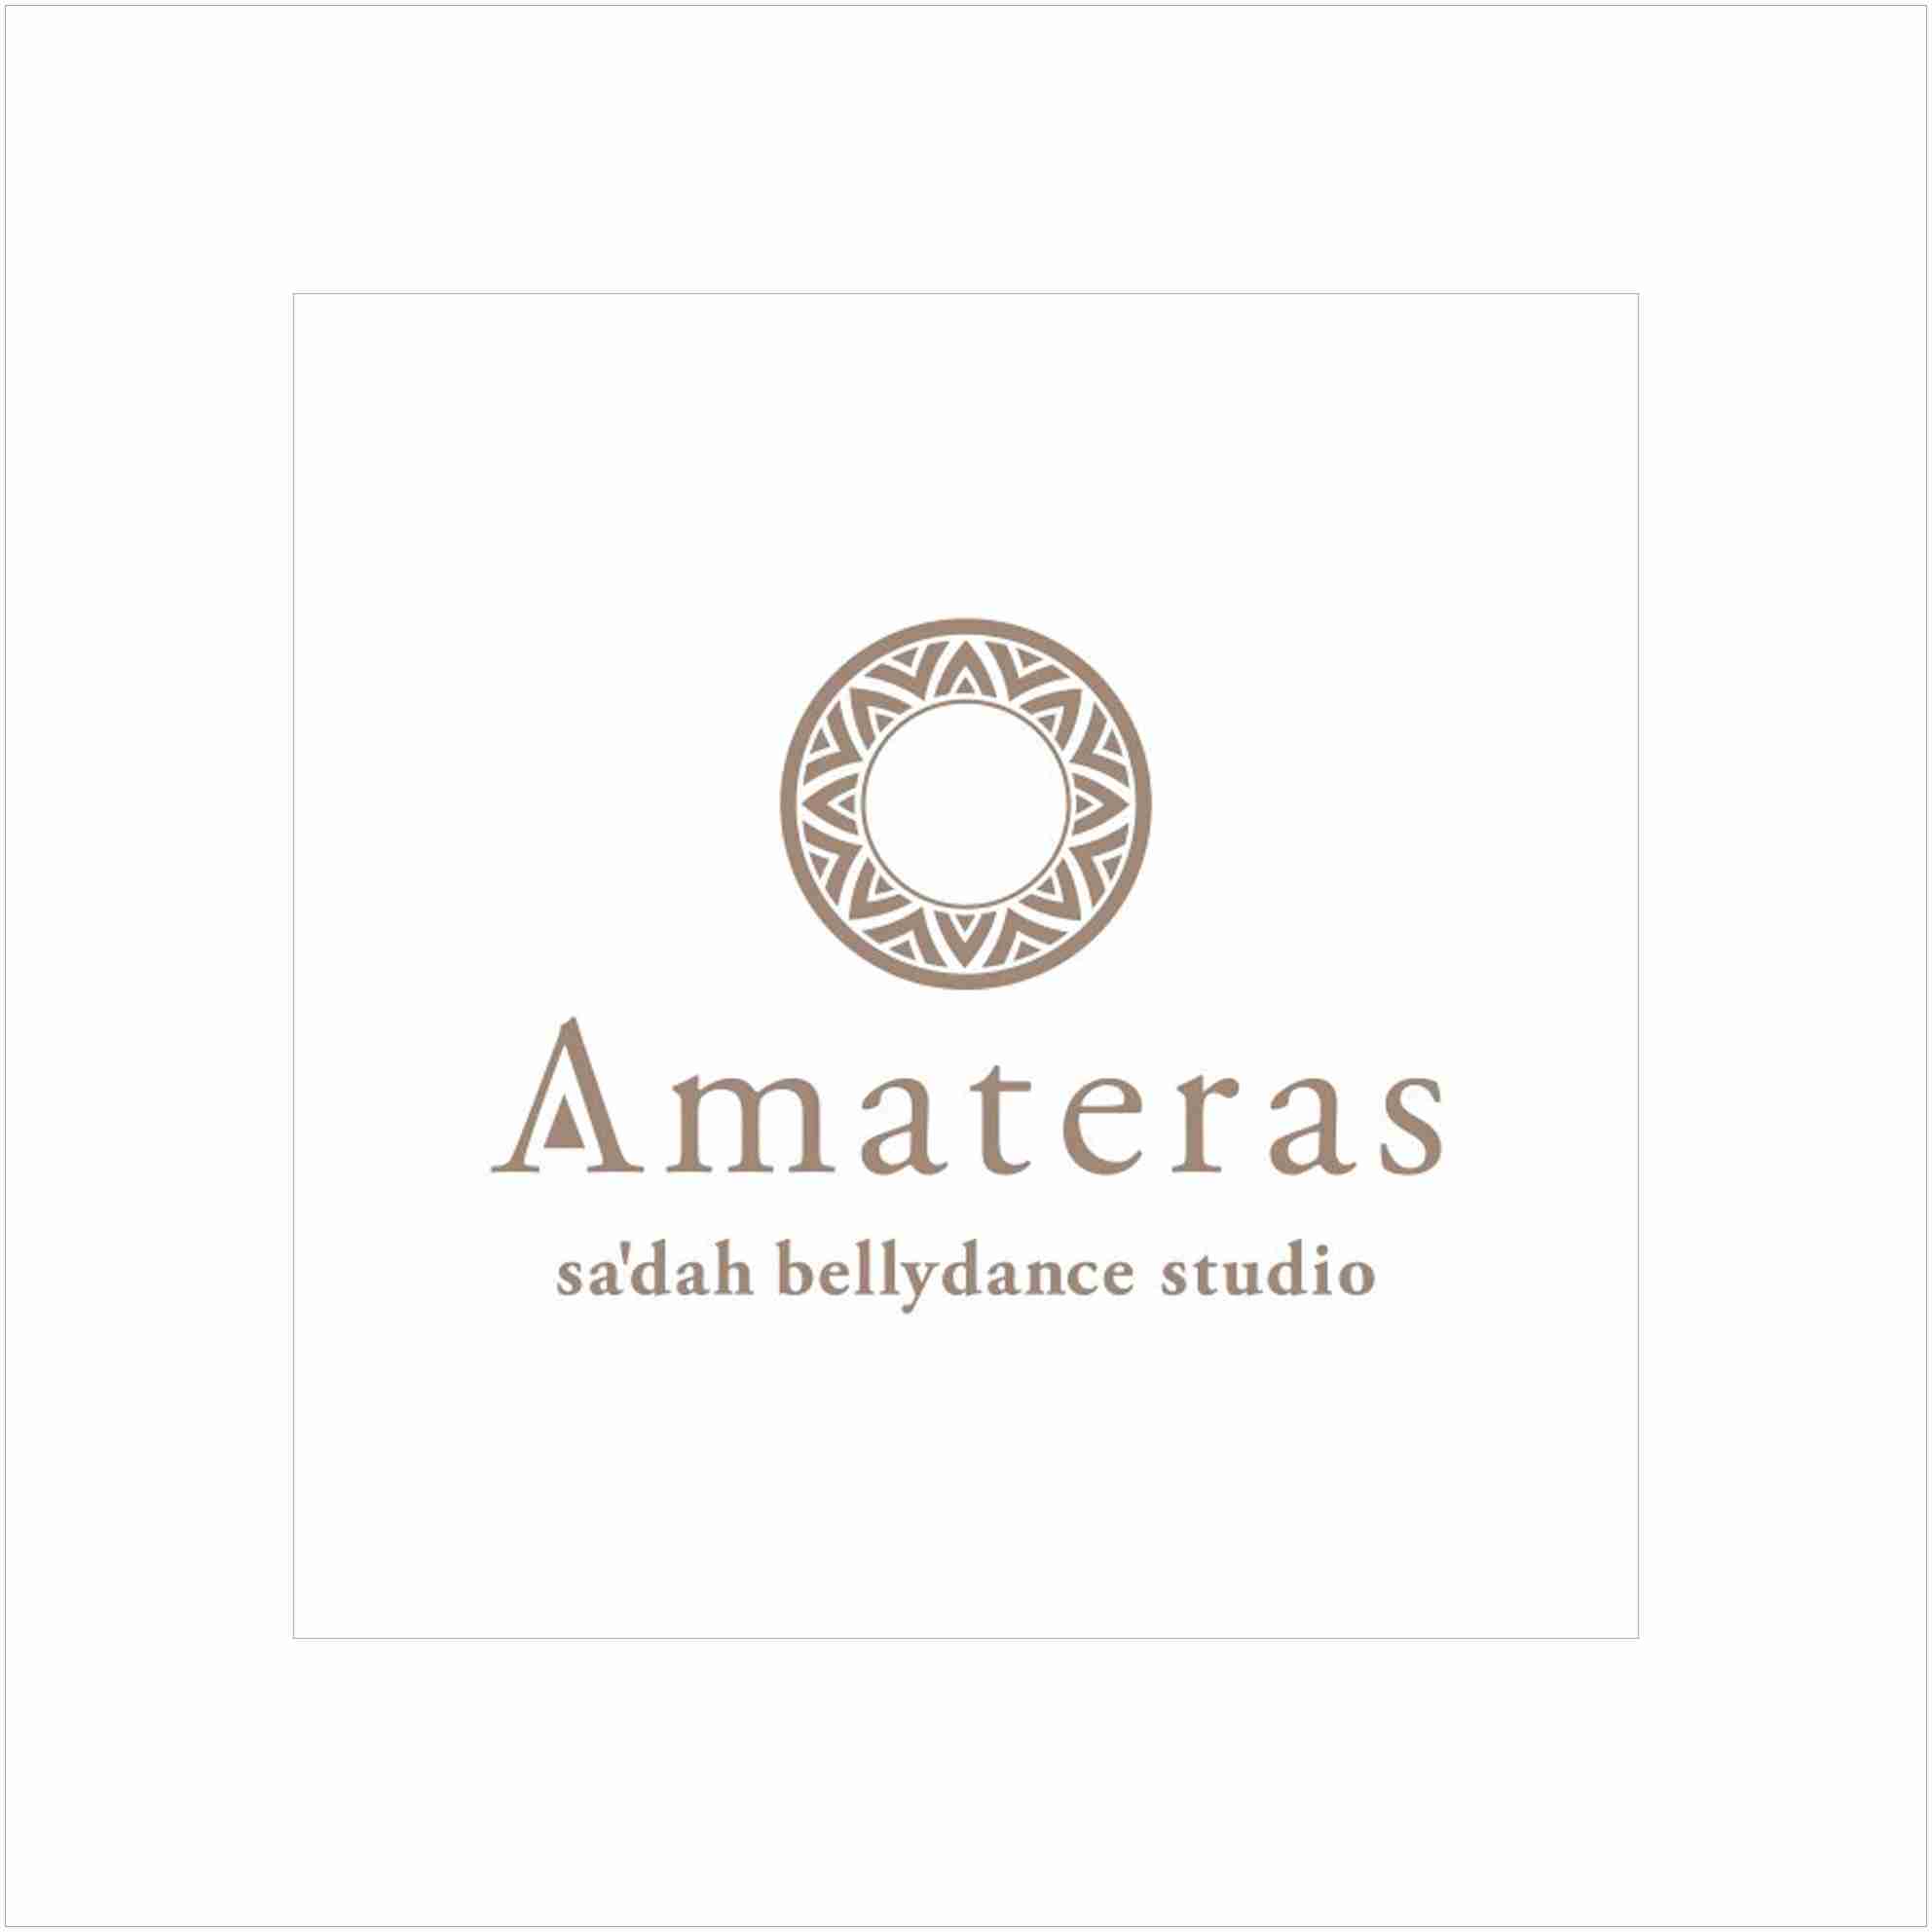 Sa'dah bellydance studio Amateras（アマテラス）